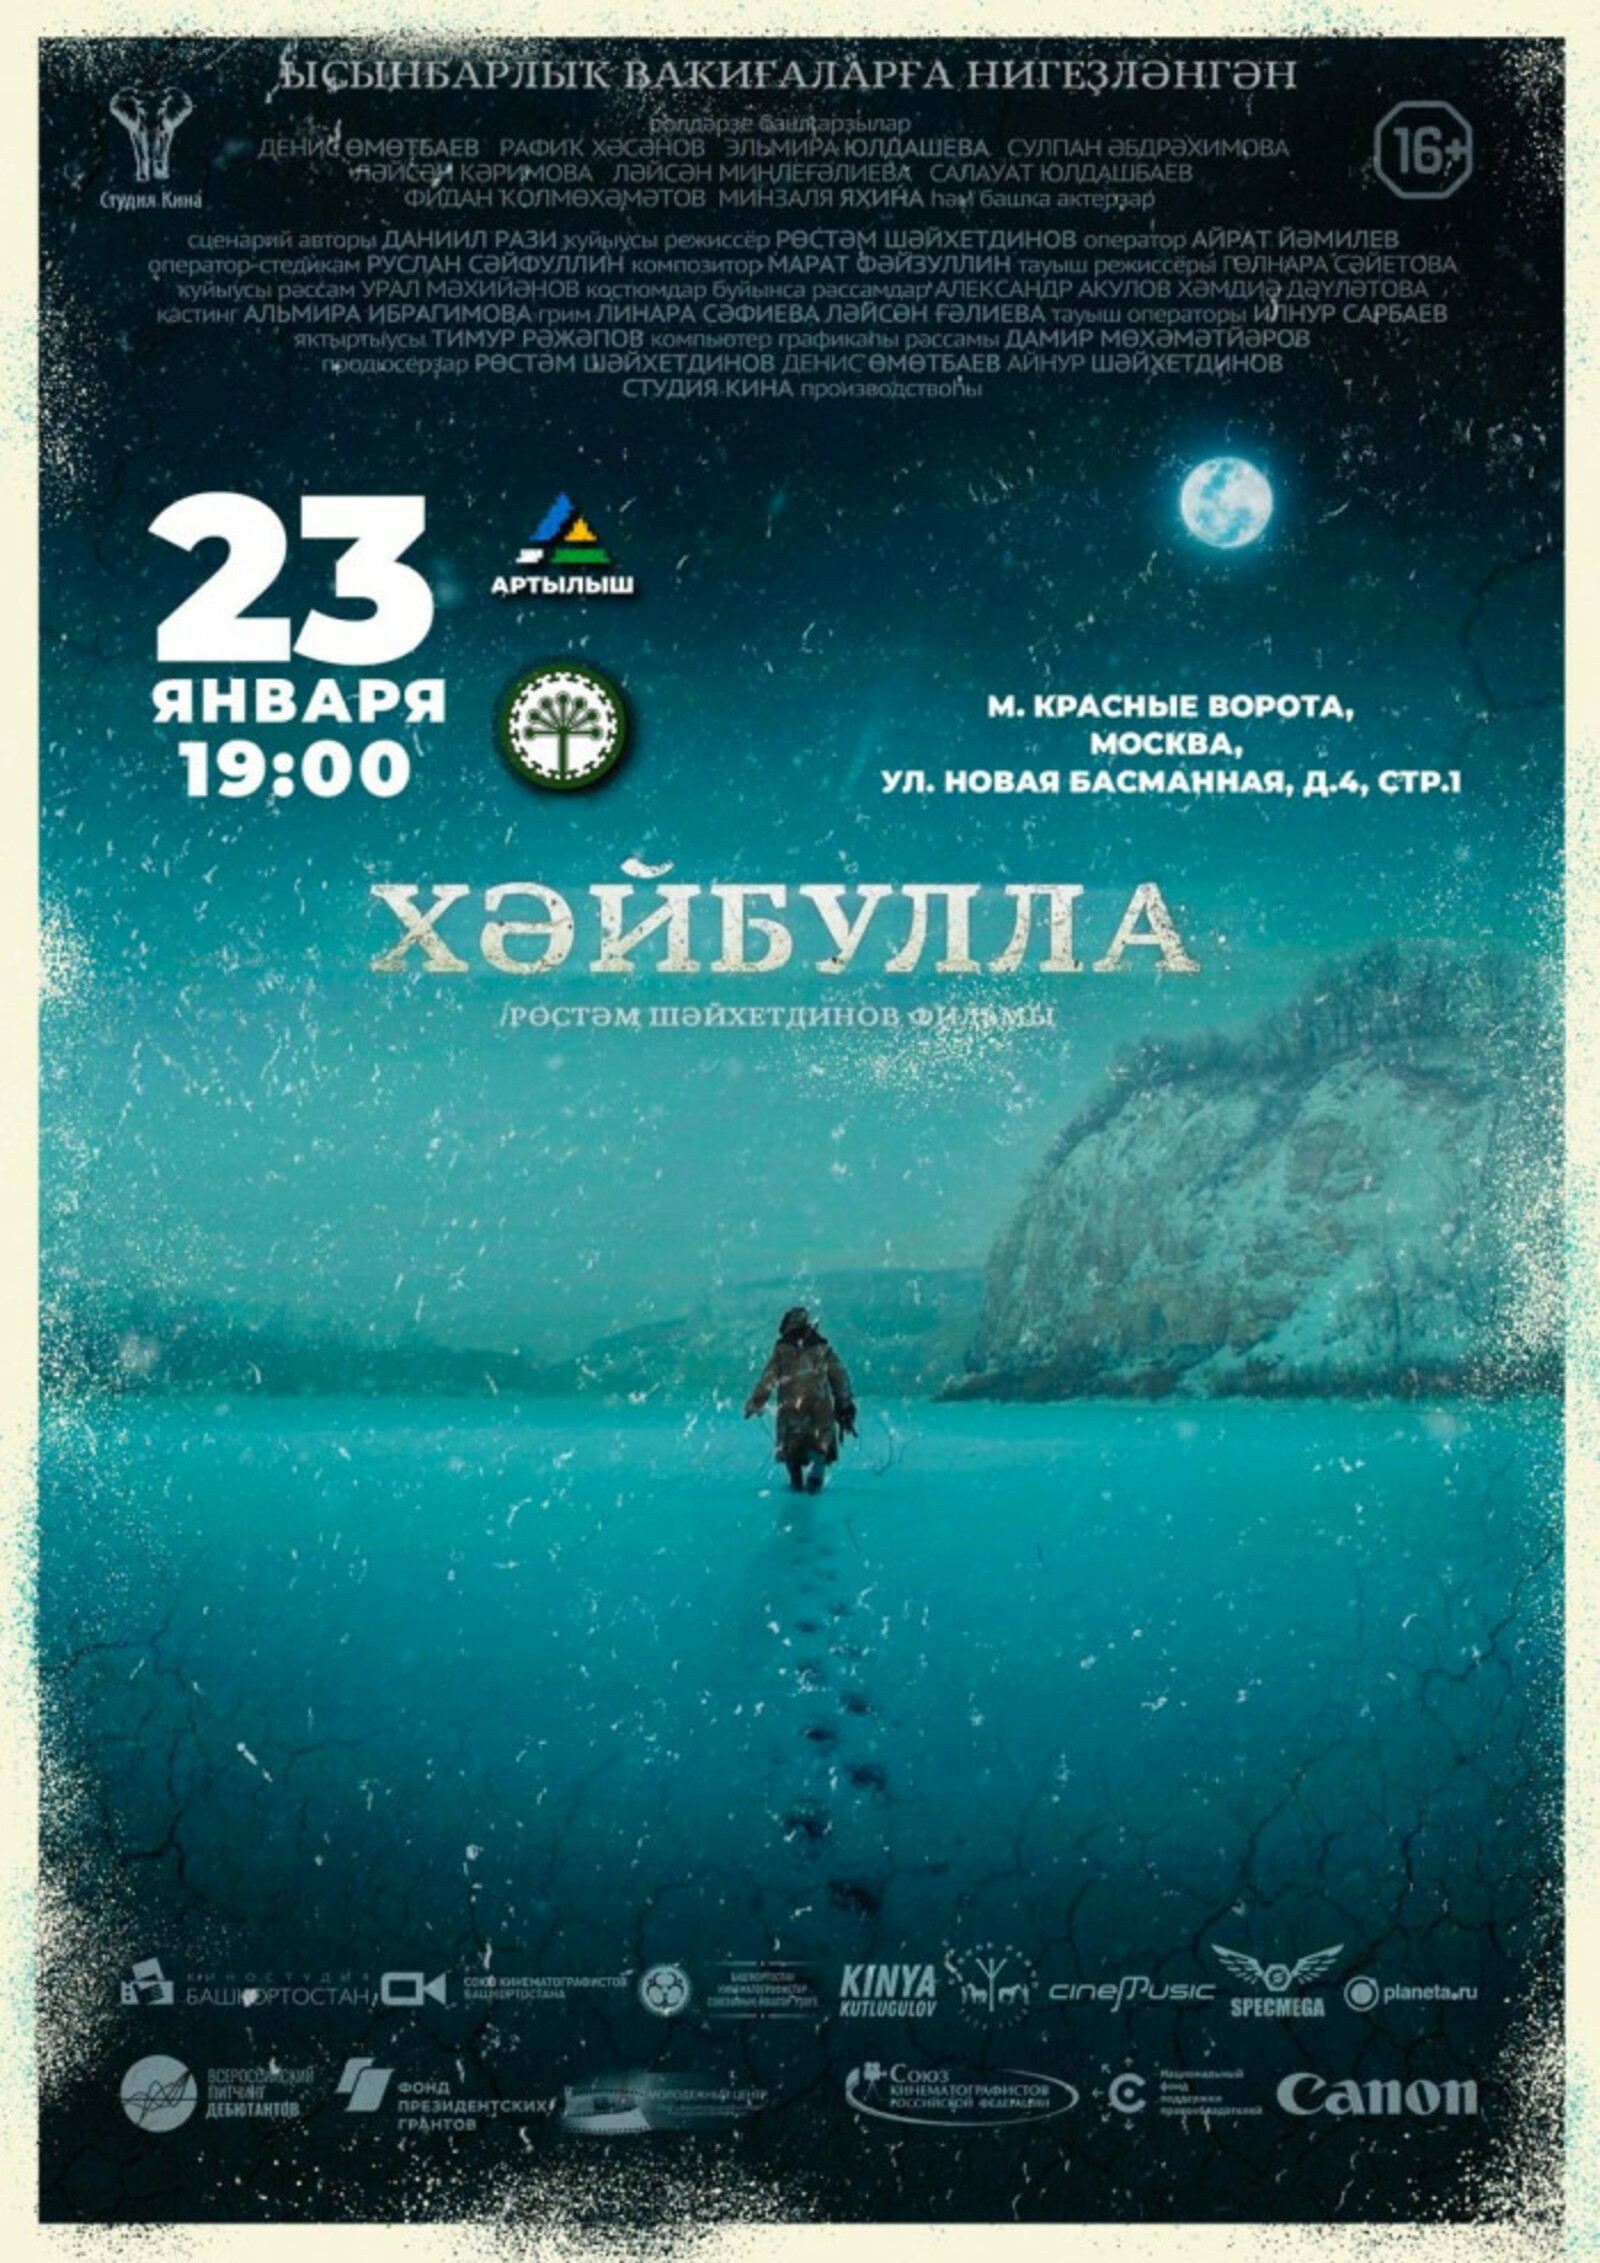 В Москве состоится премьера исторического фильма «Хайбулла»